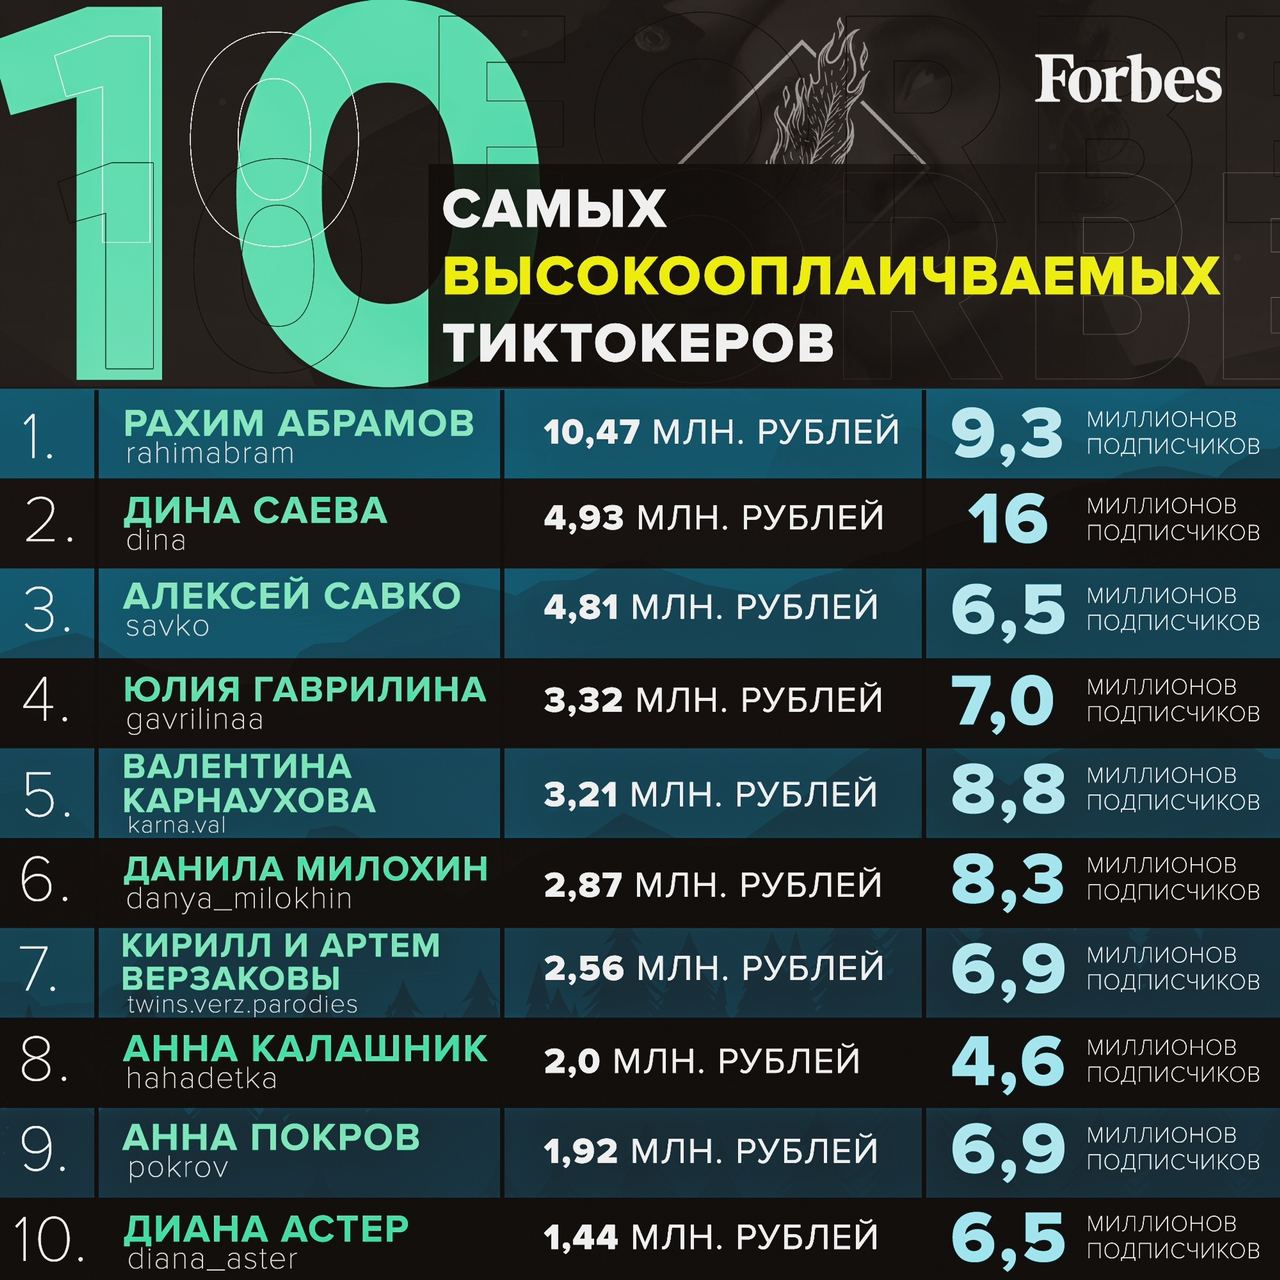 Тик заработал в россии. Форбс тиктокеры. Списка самых высокооплачиваемых тиктокеров. Форбс самые оплачиваемые тиктокеры. Топ самых высокооплачиваемых тиктокеров России.